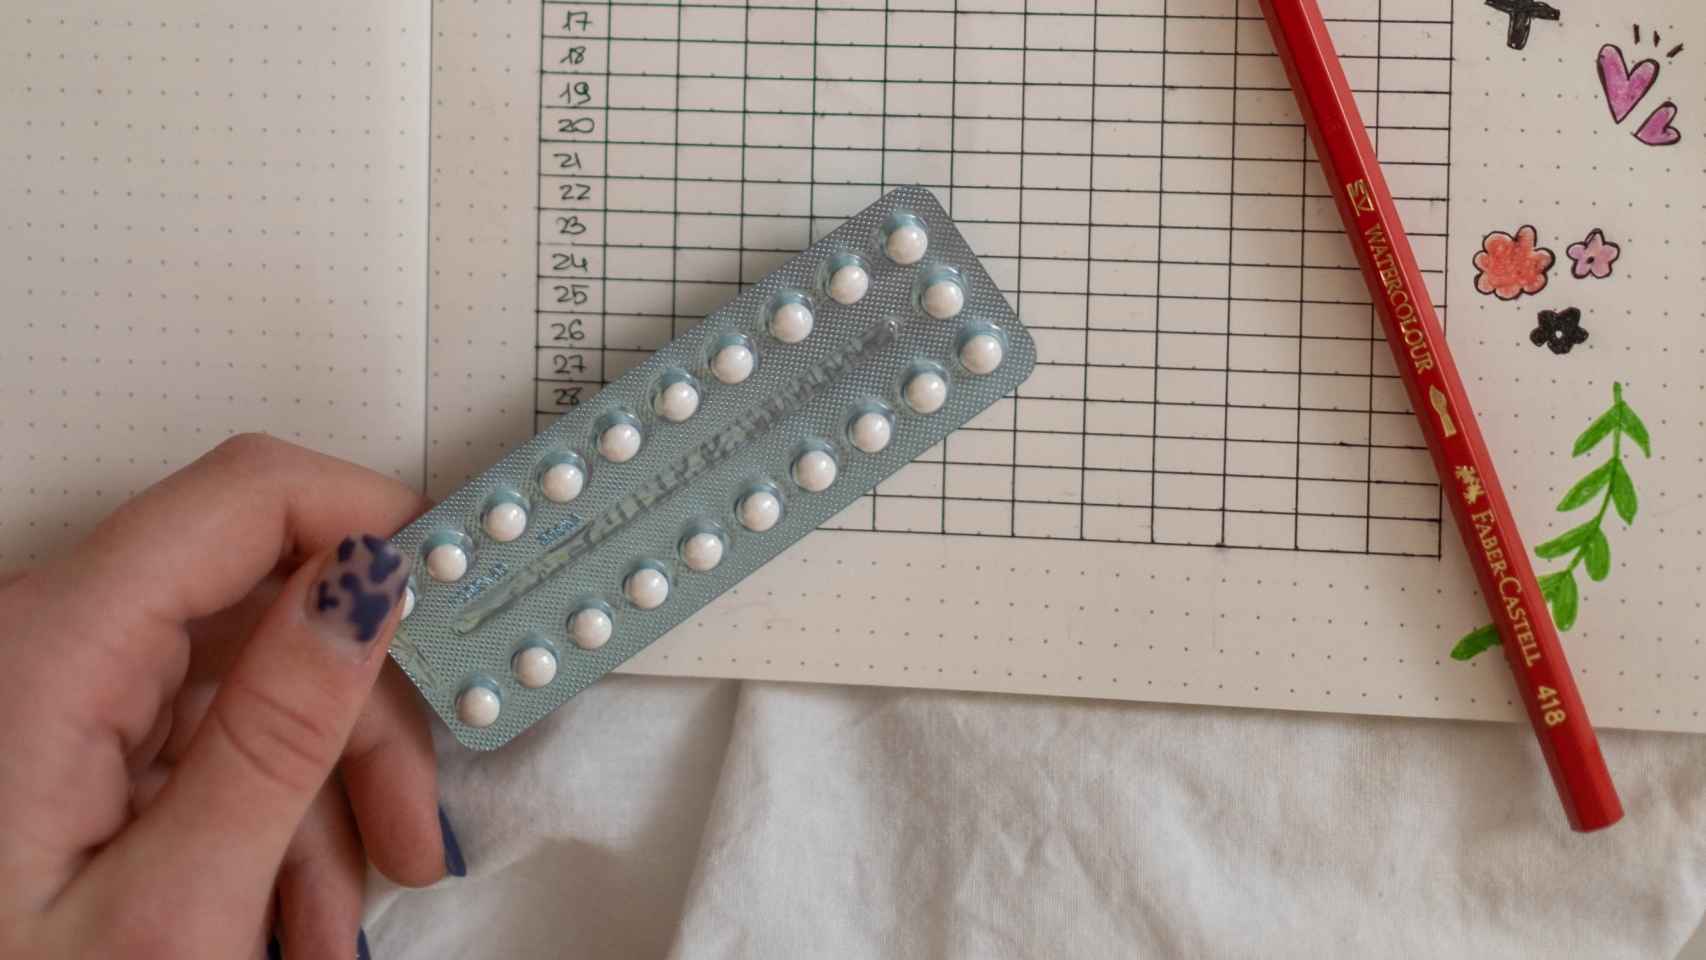 Pastillas anticonceptivos, el método más utilizado por las españolas después del preservativo